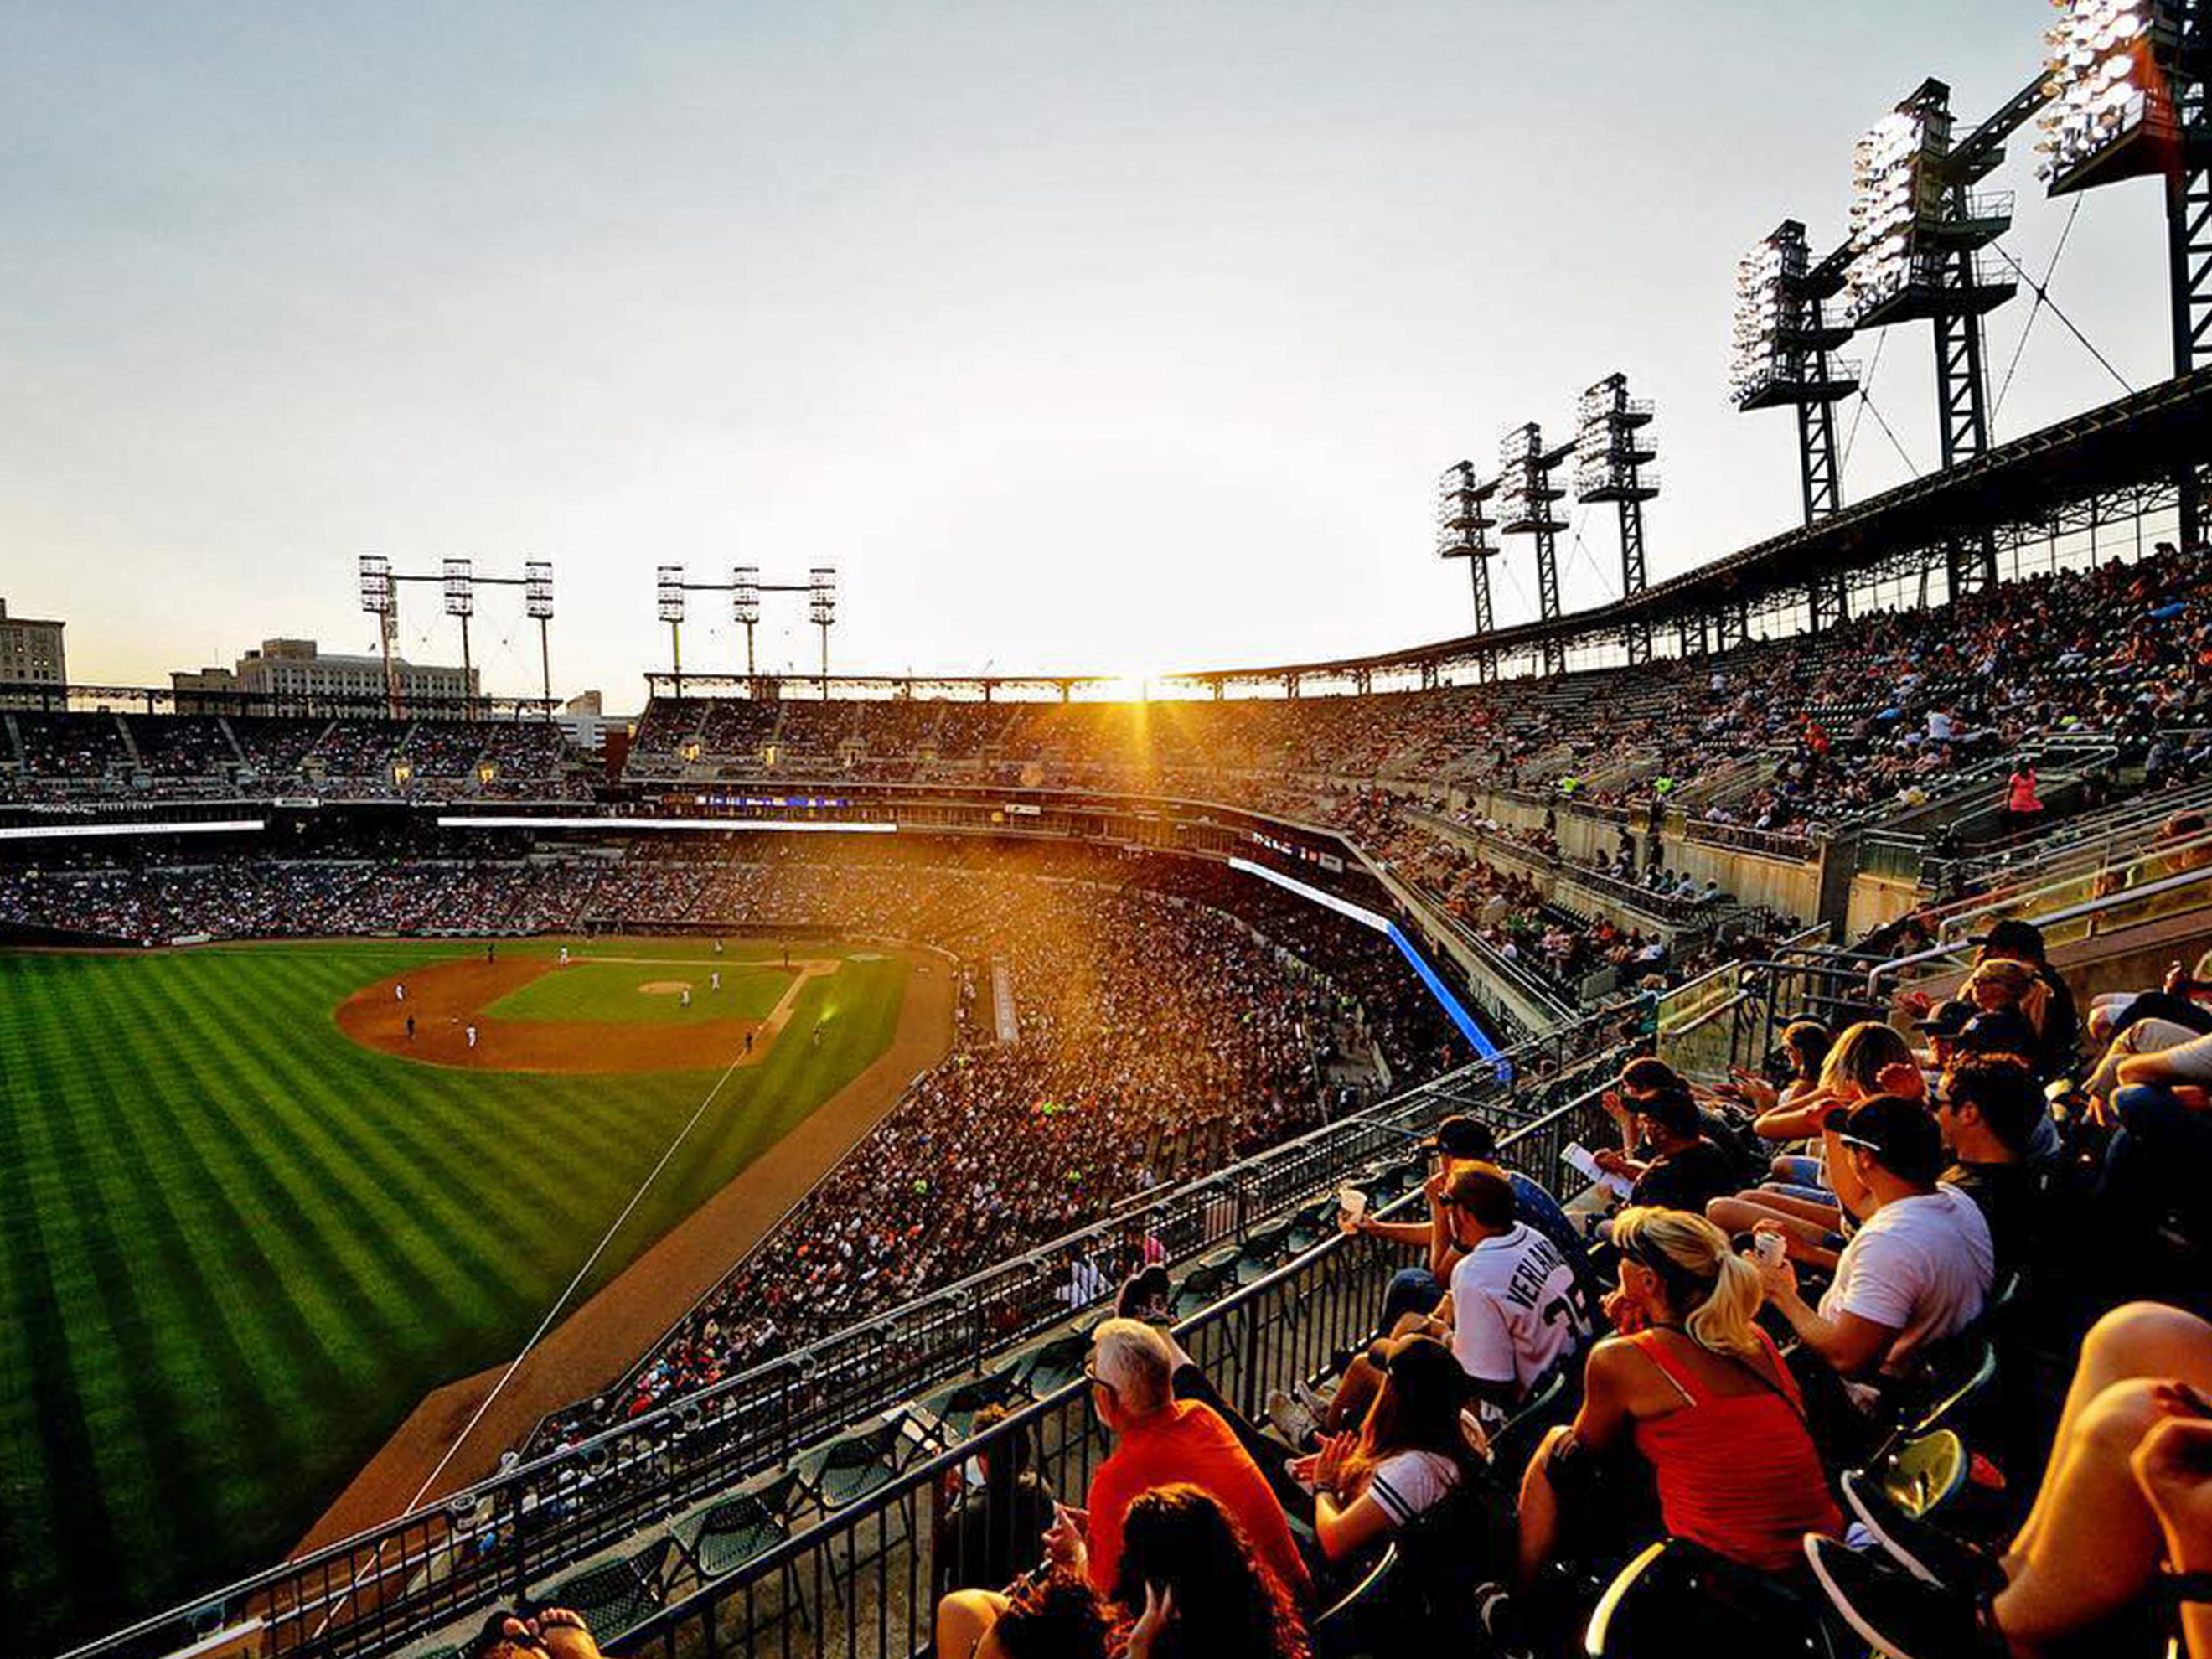 MLB Ballpark Sunsets